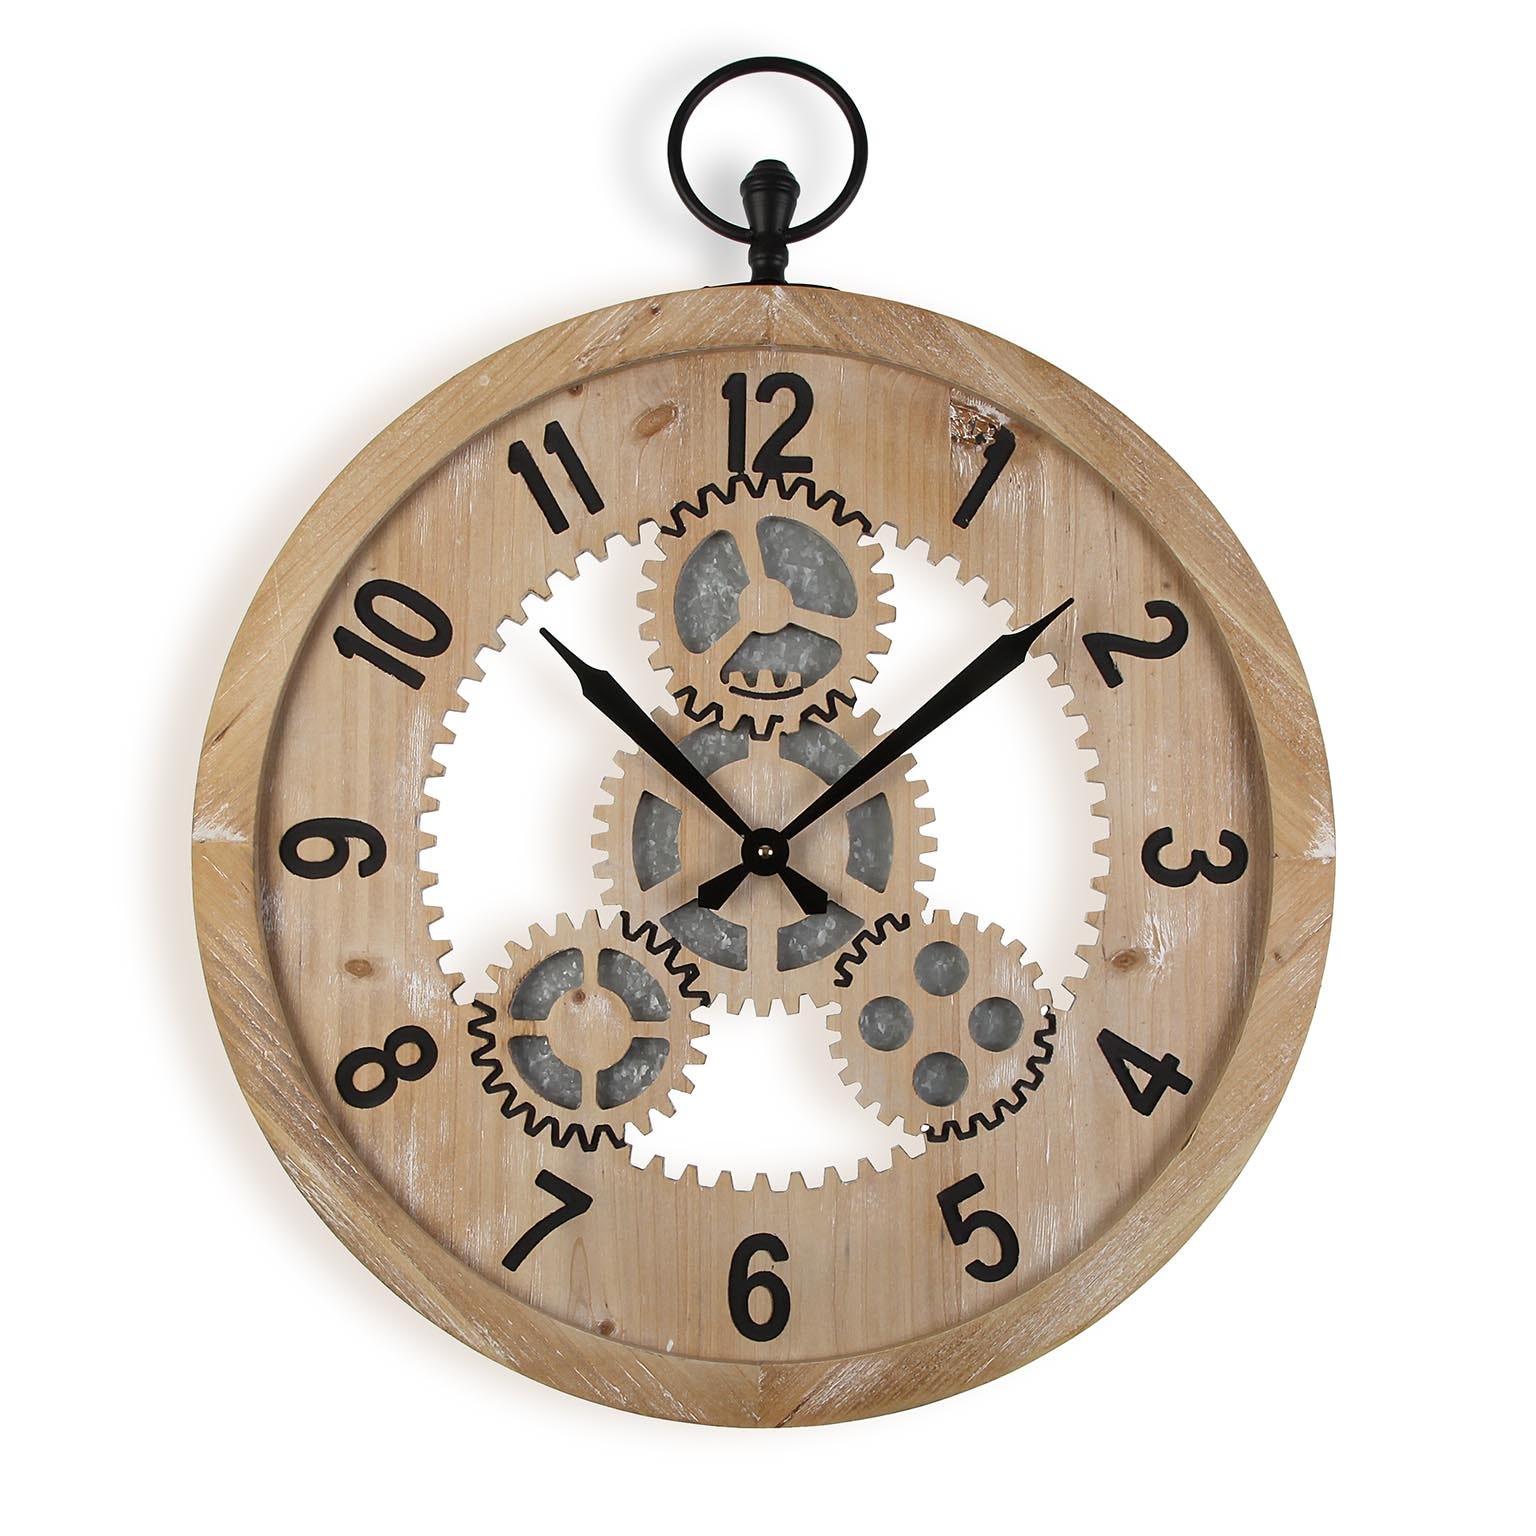 Versa Auxon Reloj de Pared Decorativo para la Cocina, el Salón, el